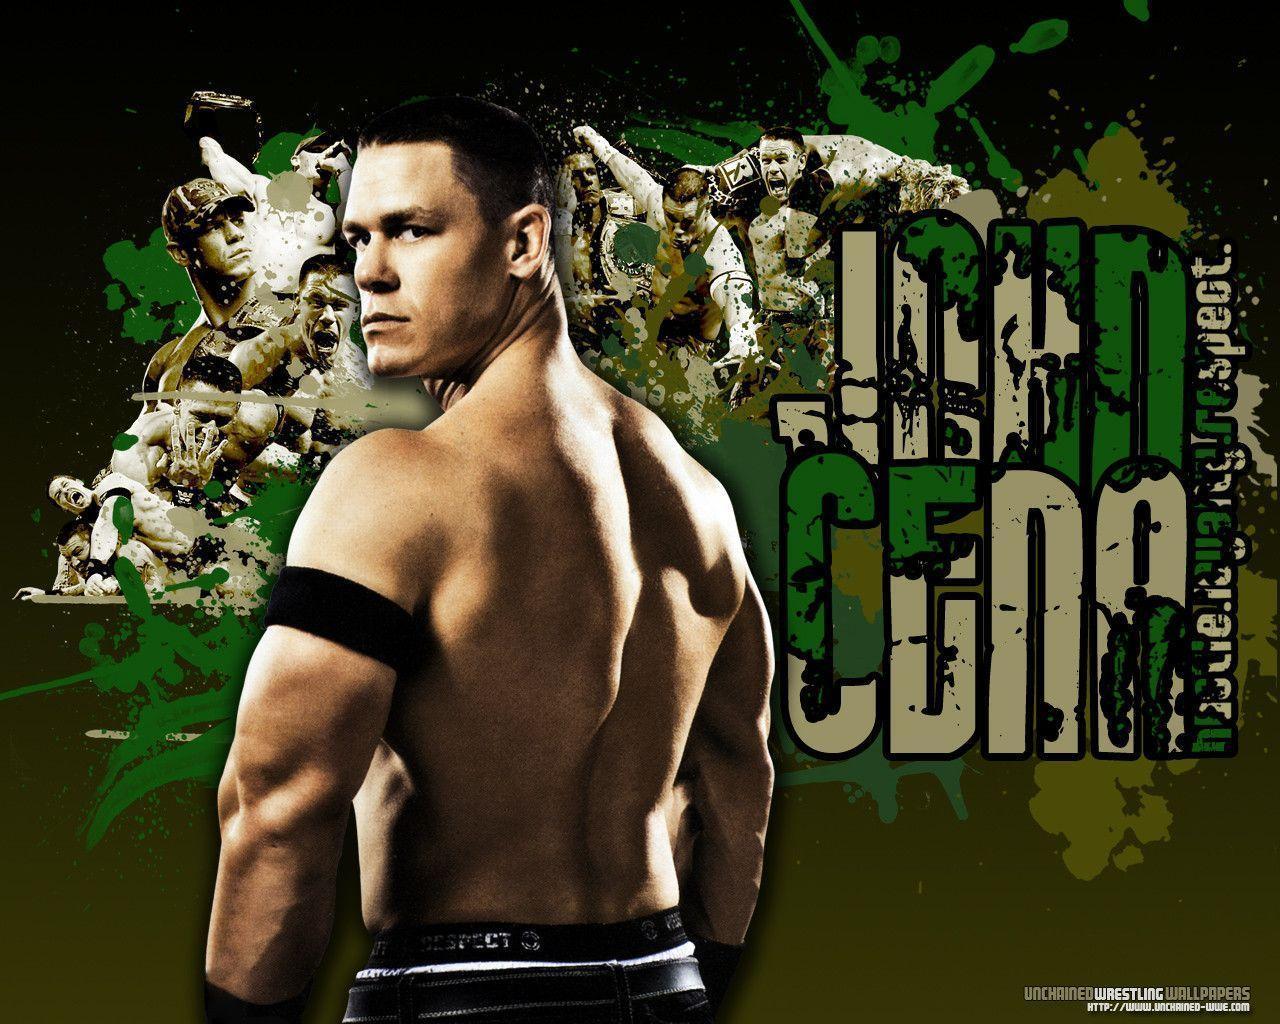 WWE John Cena "Hustle, Loyalty, Respect" Wallpaper Unchained WWE